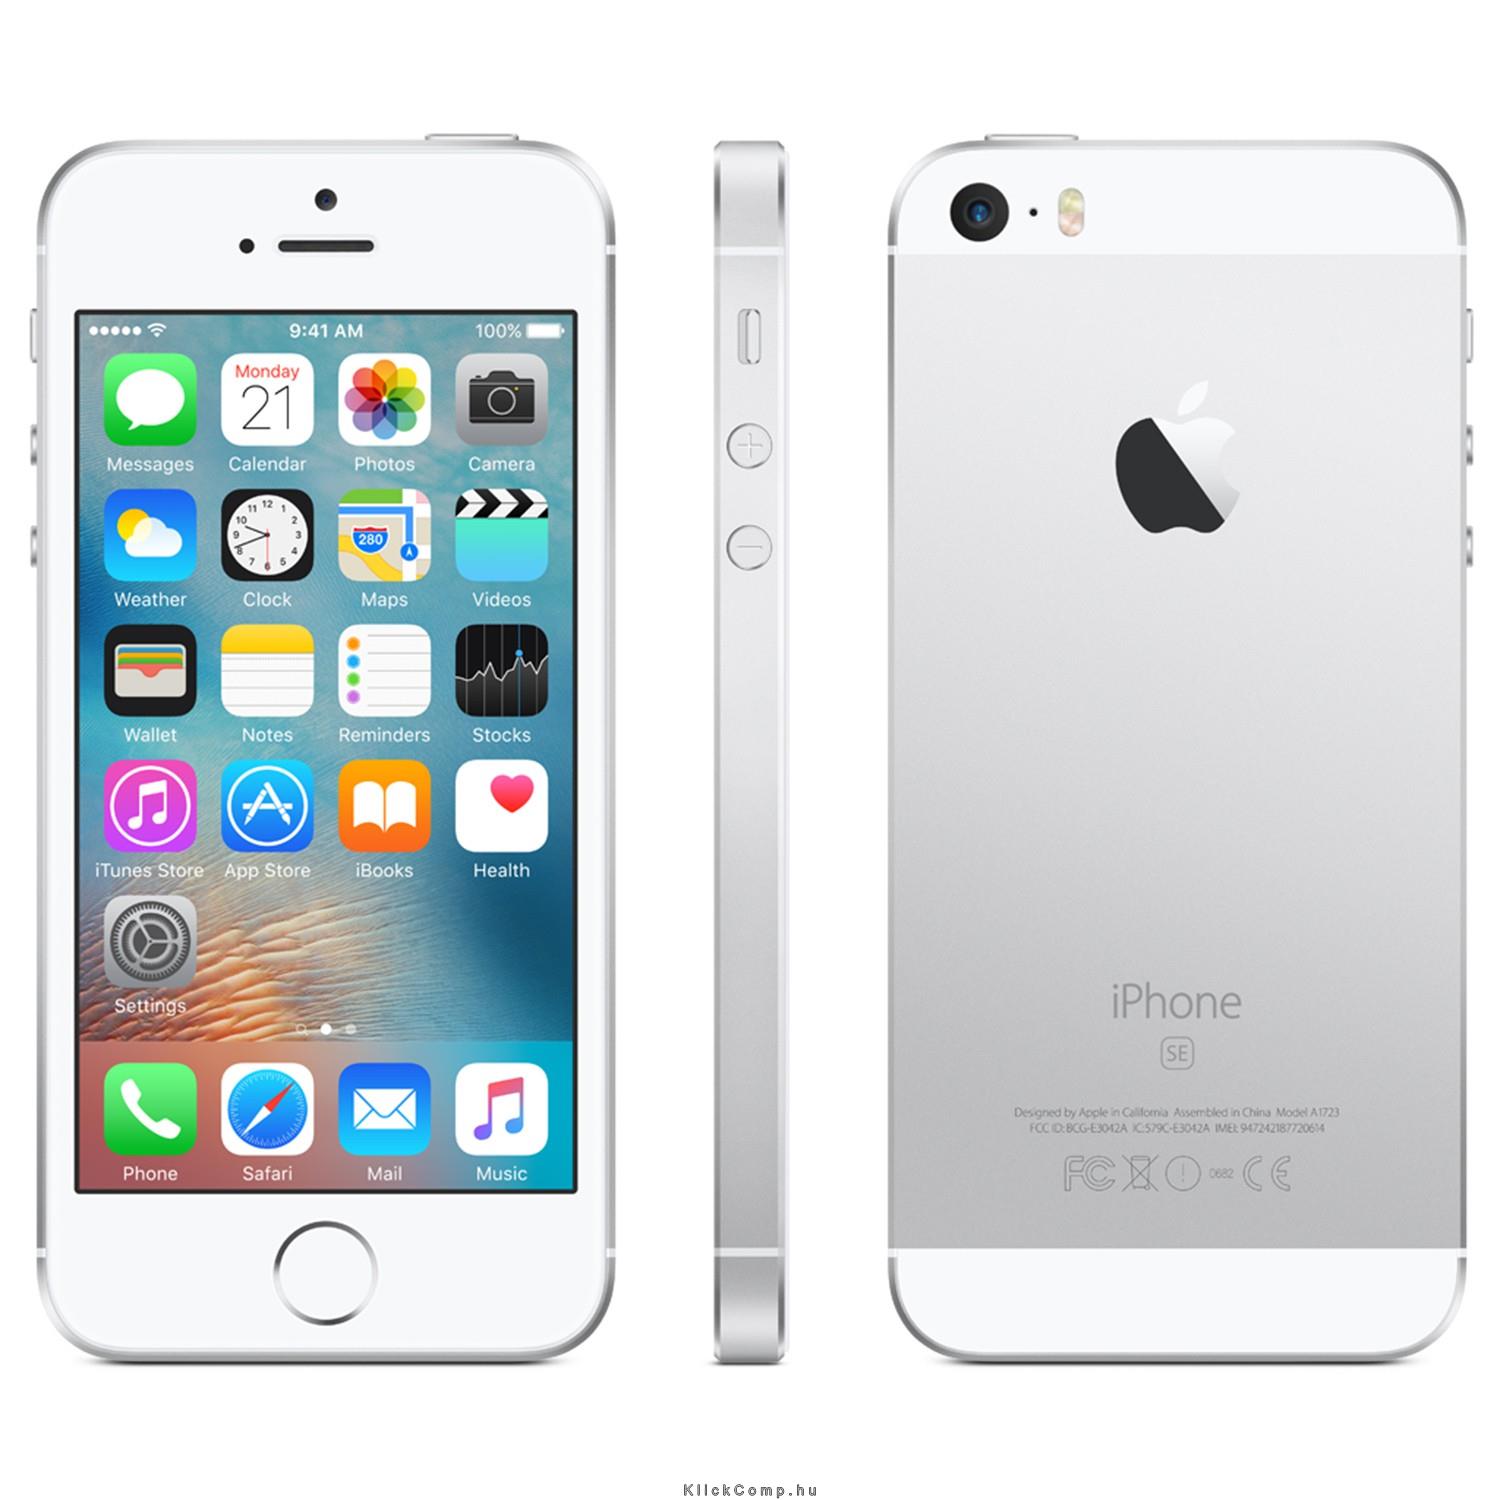 Apple iPhone SE 16GB Silver fotó, illusztráció : MLLP2